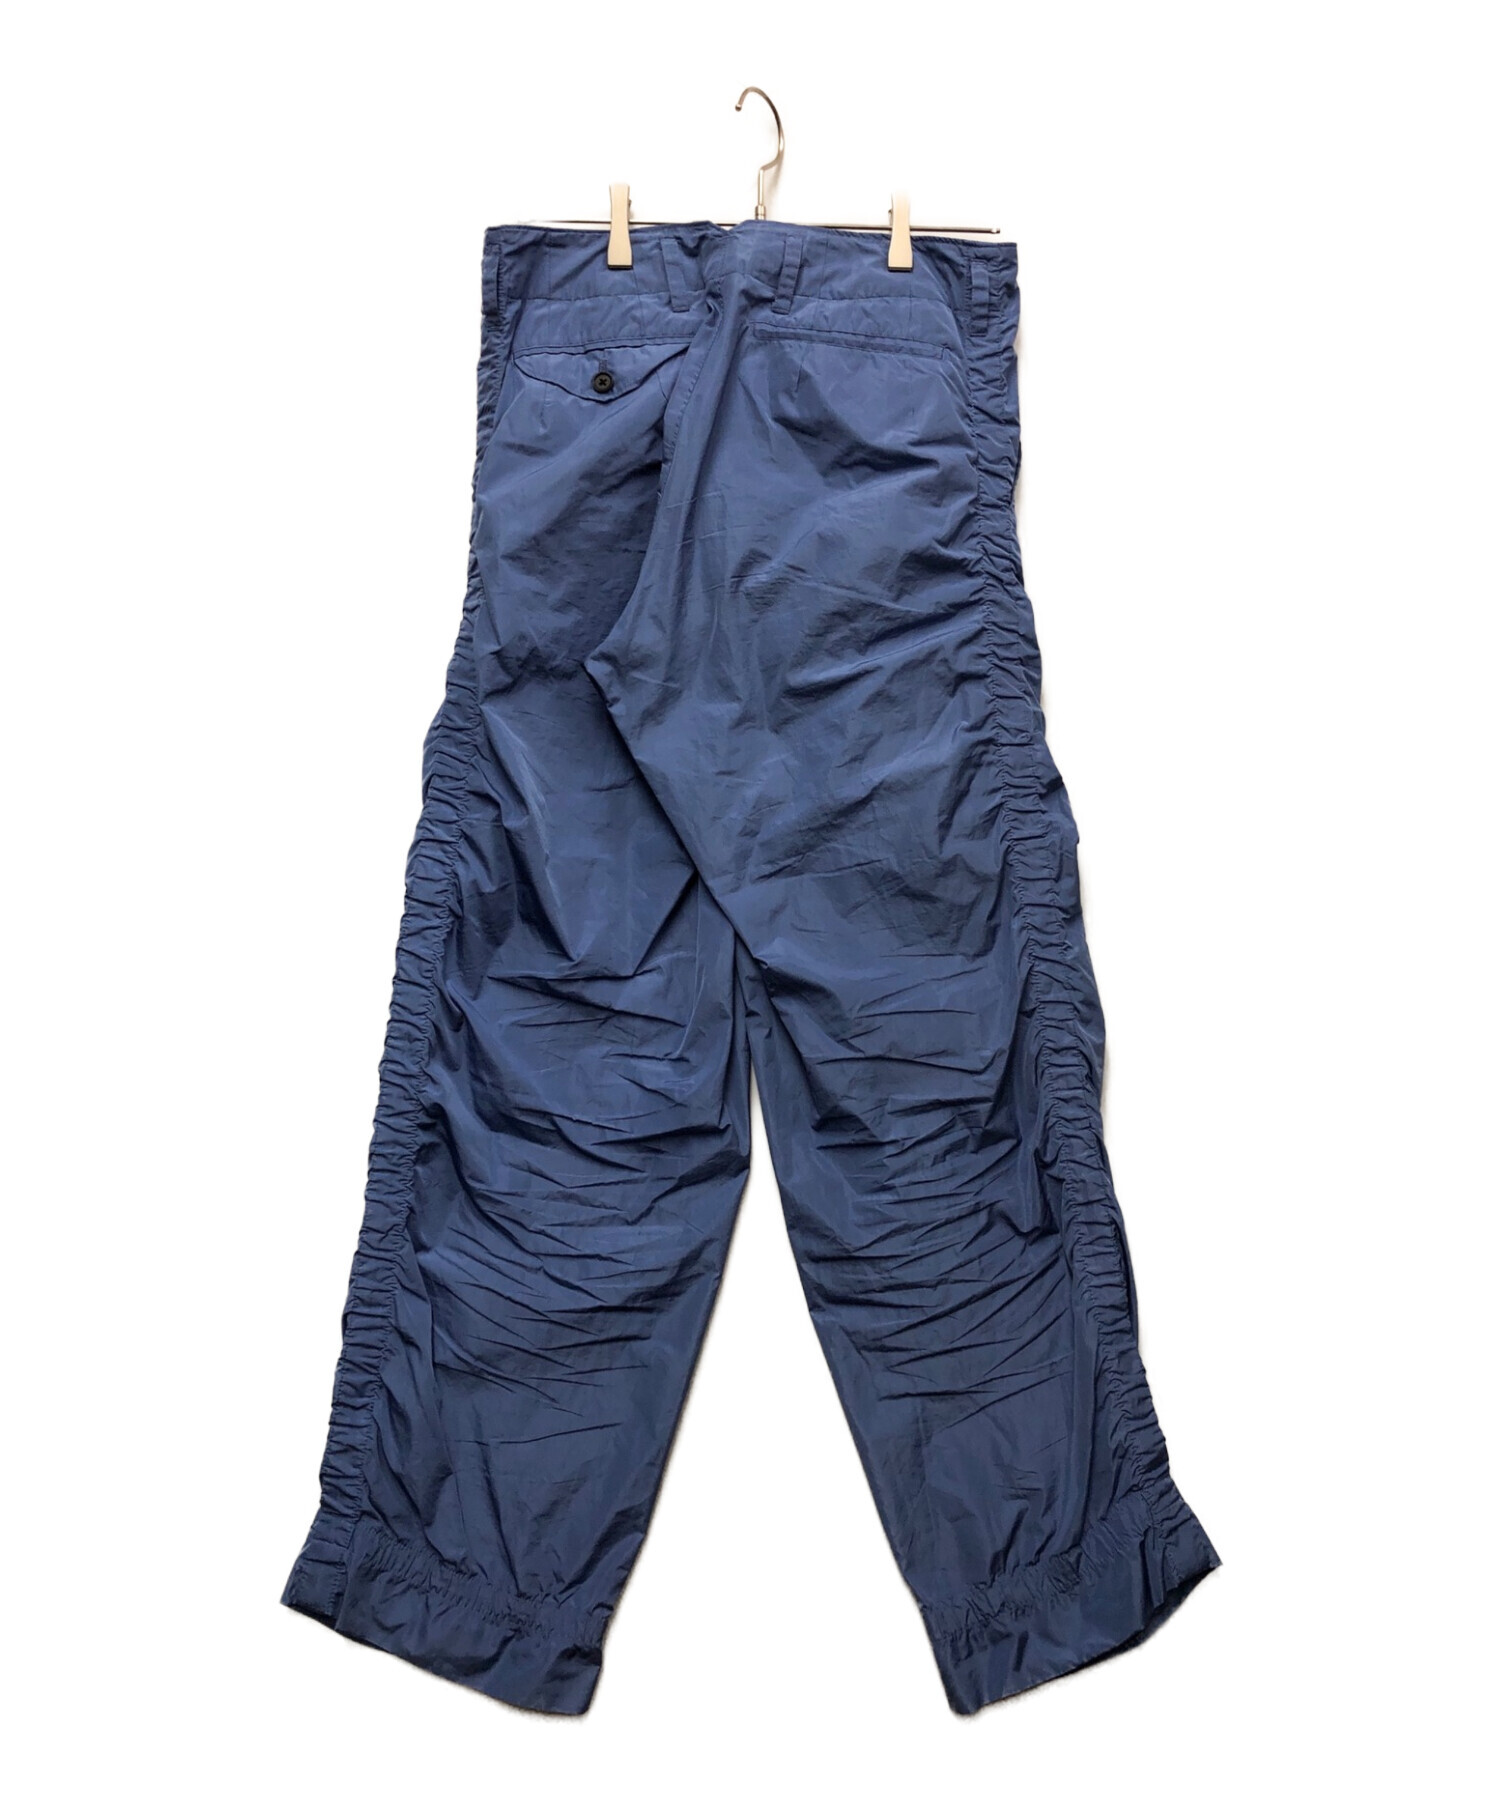 即日可kolor / BEACON パンツ サイズ2(Mサイズ相当) 新品未使用 パンツ